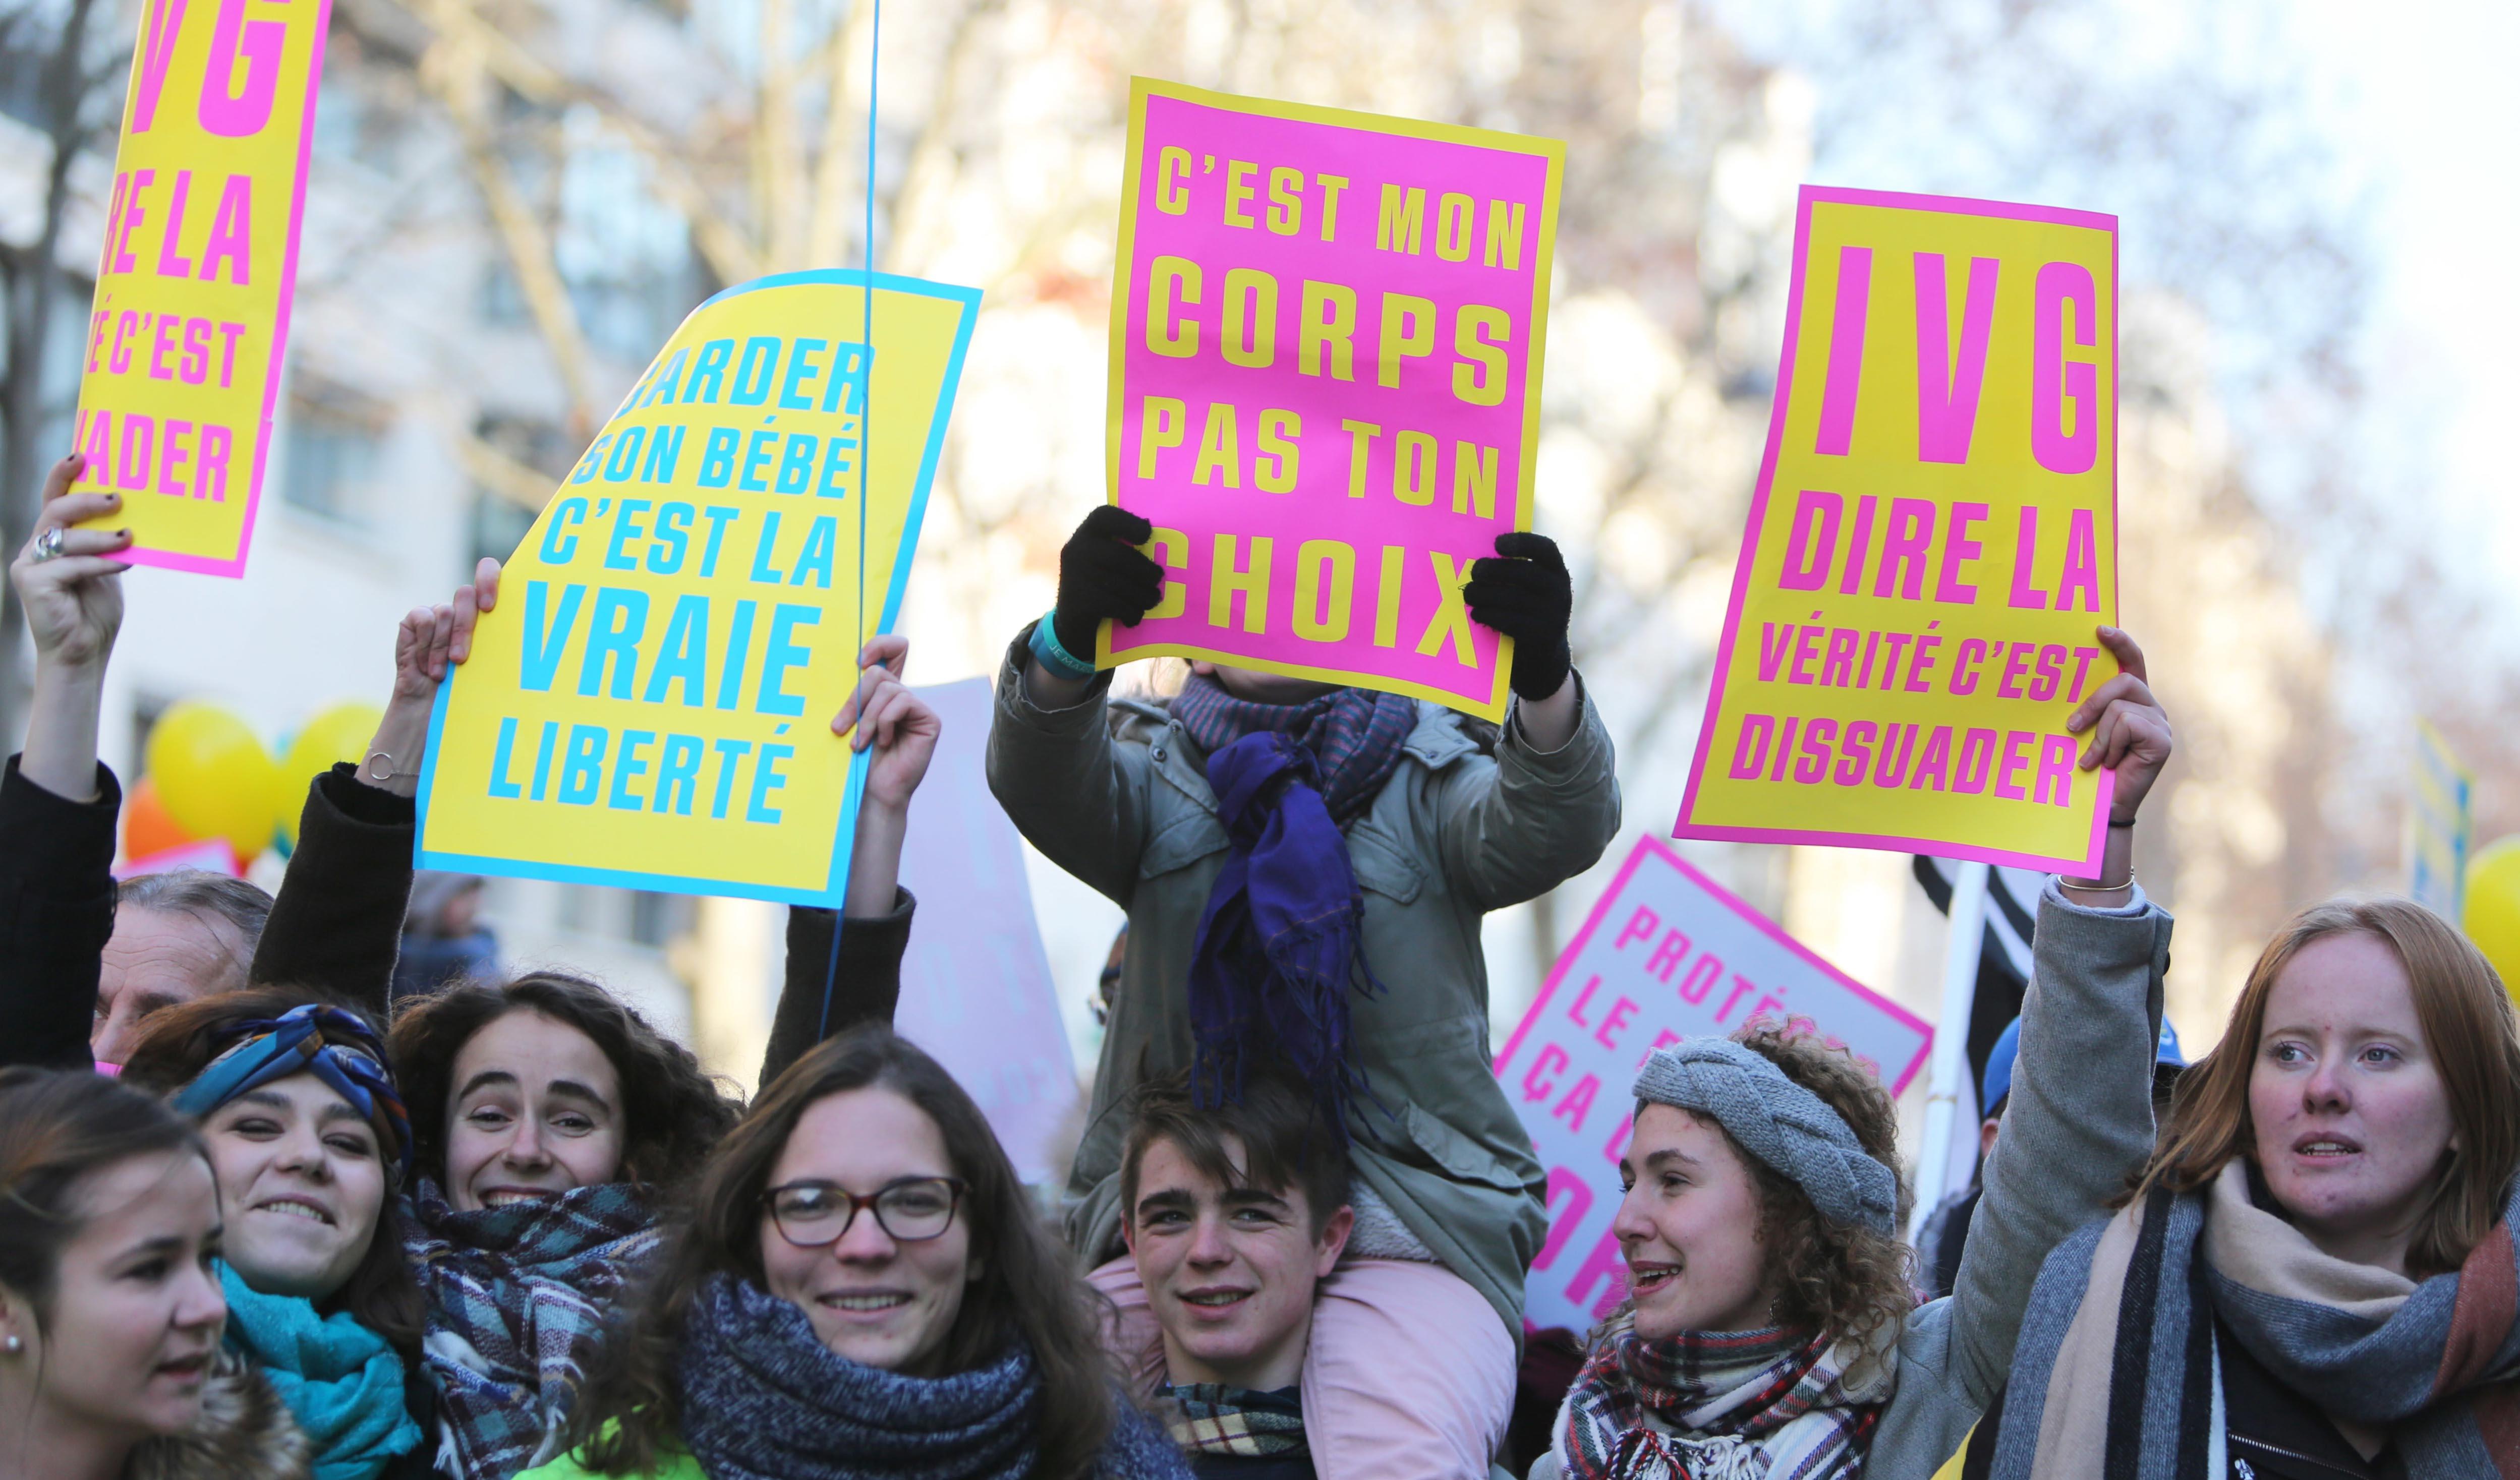 Qui A Droit à L Affouage "Droit à l'avortement pour toutes", la manifestation à ne pas louper